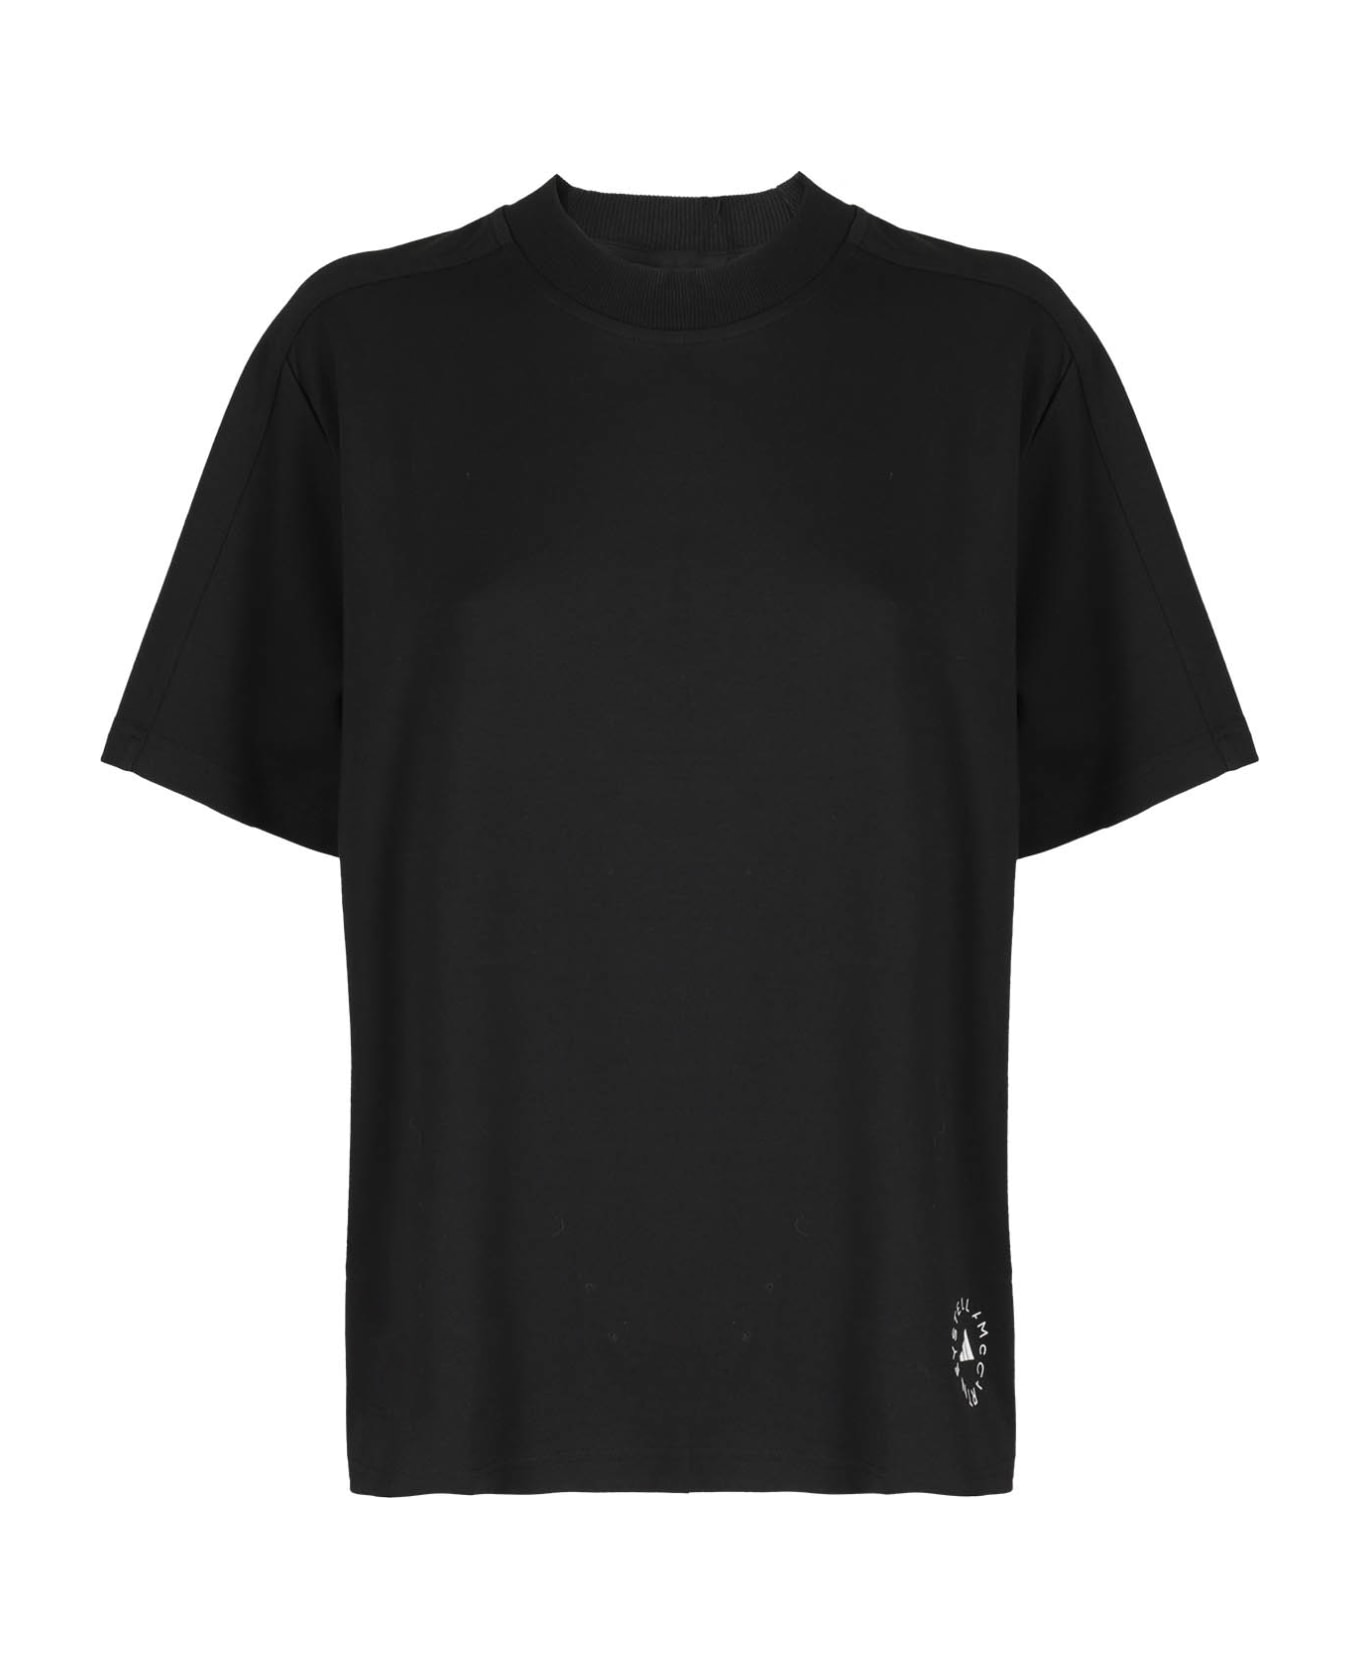 Adidas by Stella McCartney Logo Tee - Black Tシャツ